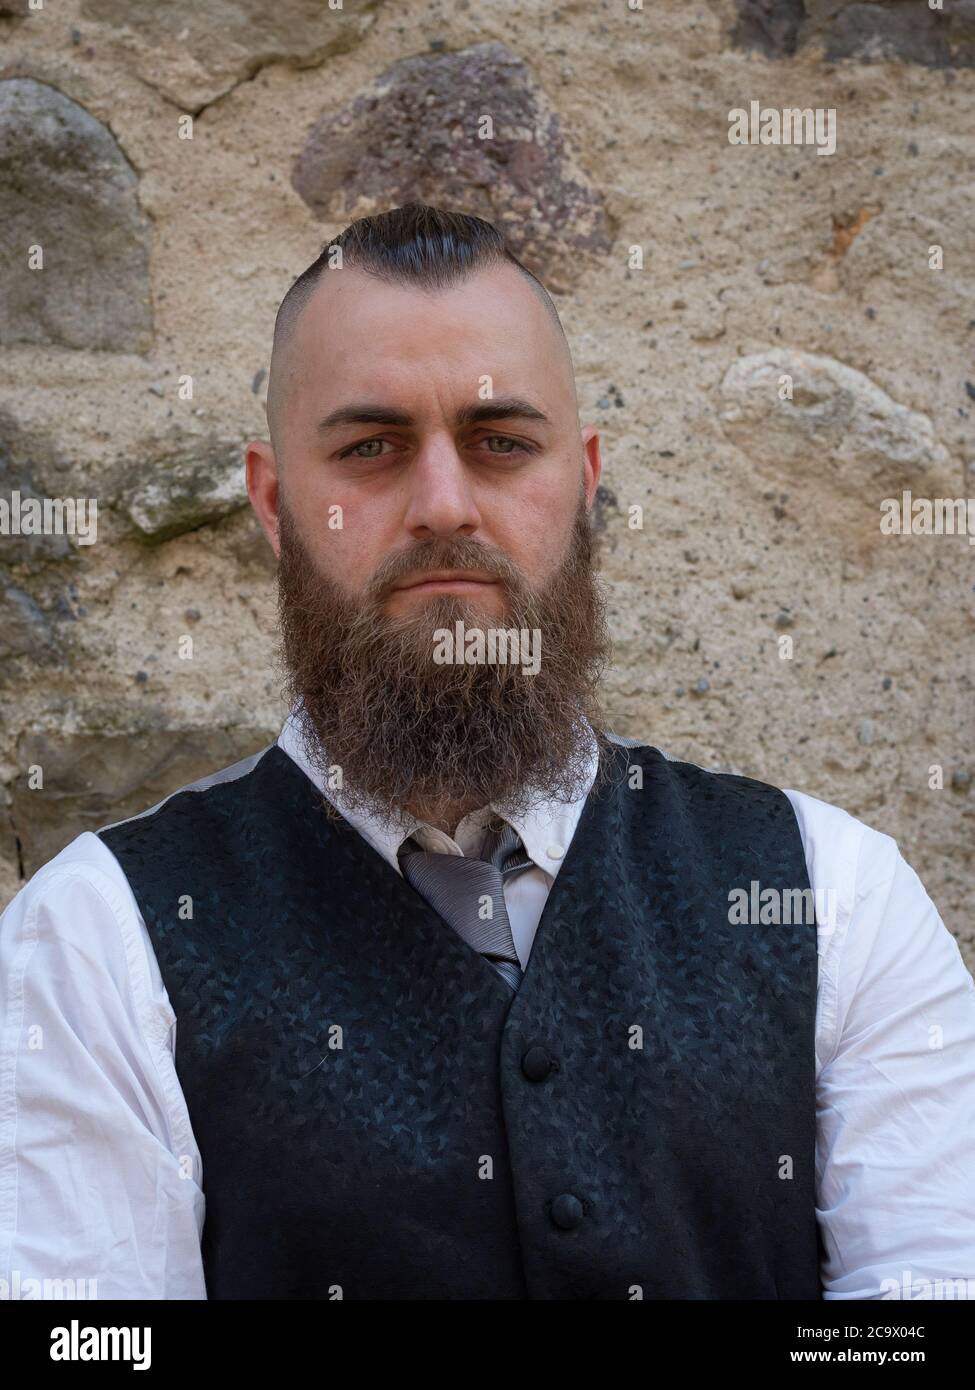 L'uomo con barba lunga indossa un abito elegante e scuro che si posa davanti a un muro di pietra Foto Stock